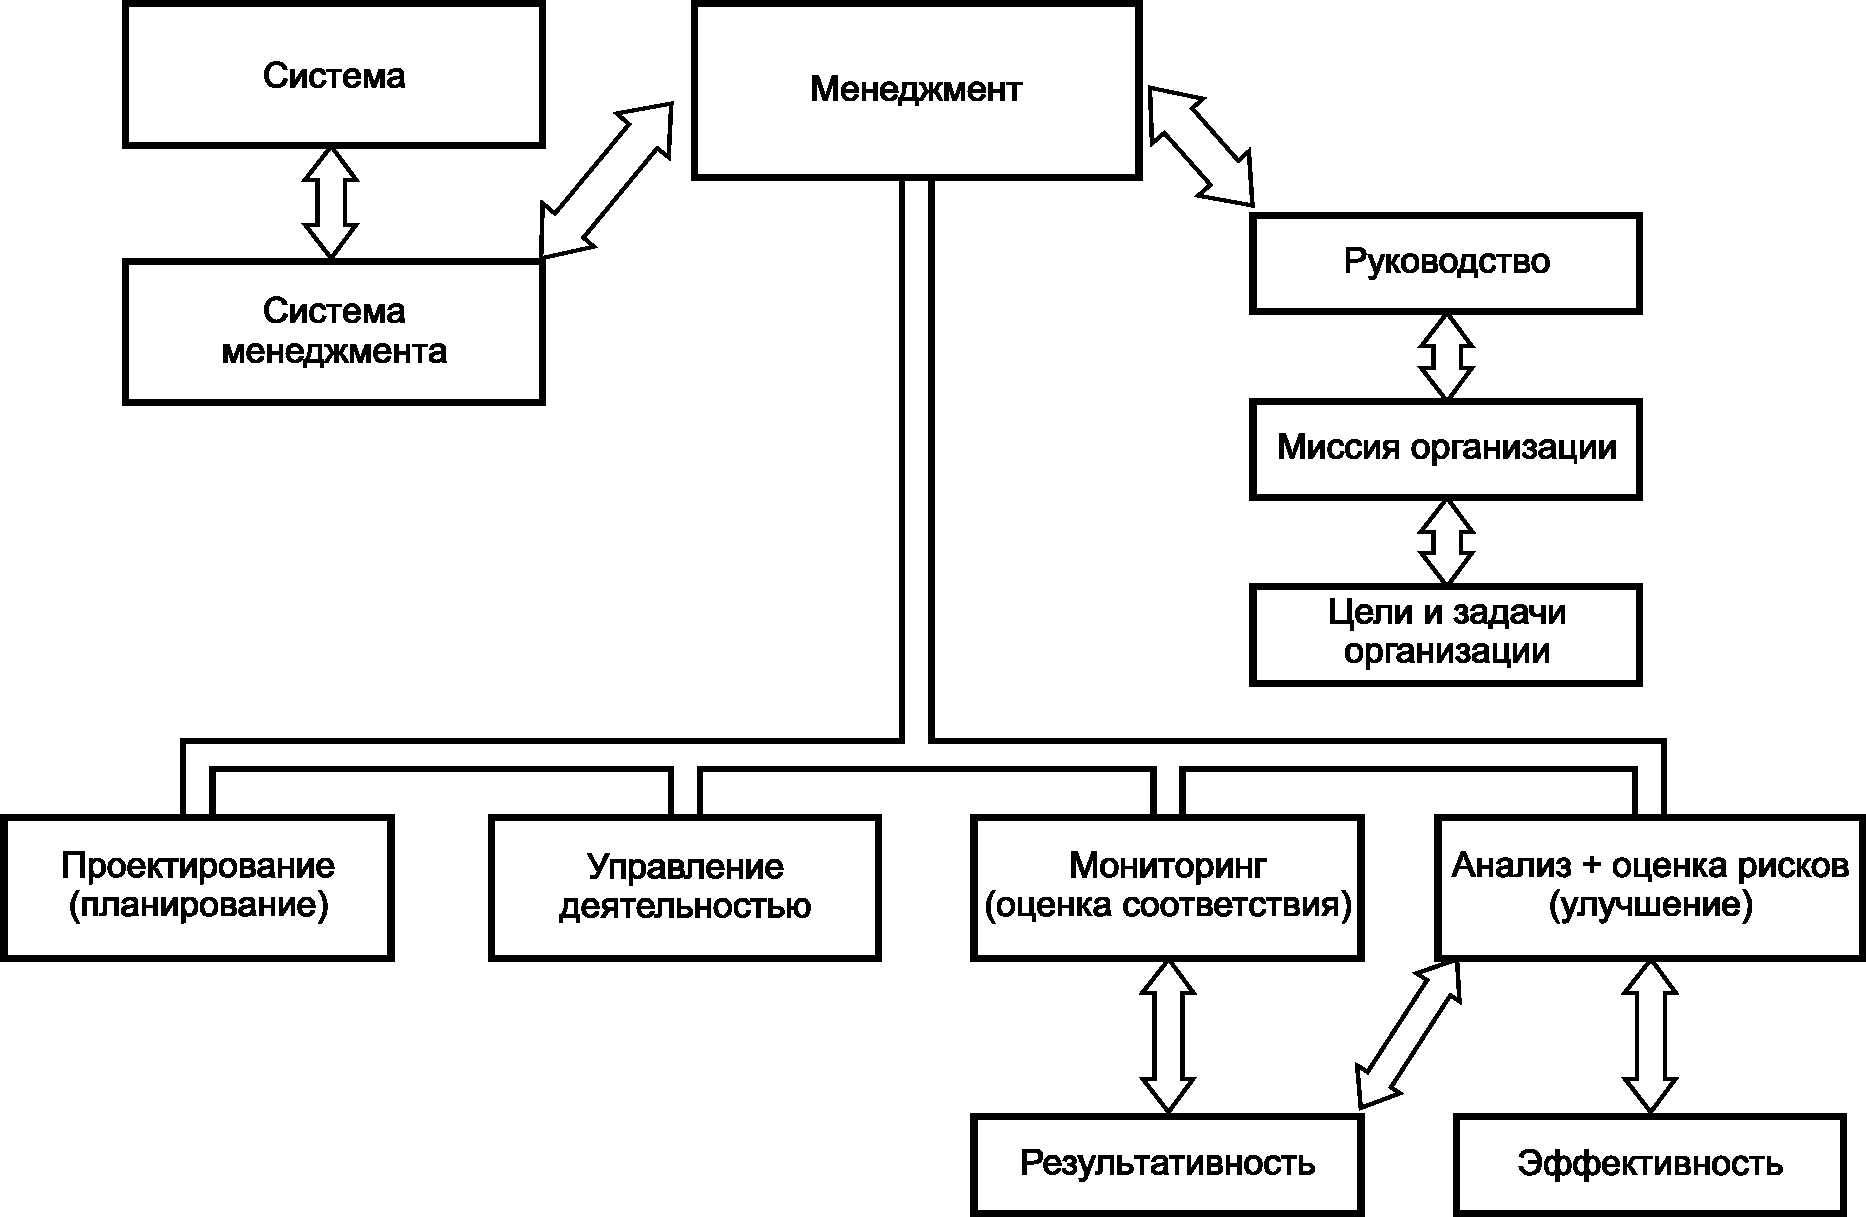 - Рисунок 1 - Схема связи между понятиями, относящимися к менеджменту, построенная по аналогии с ГОСТ Р ИСО 9000